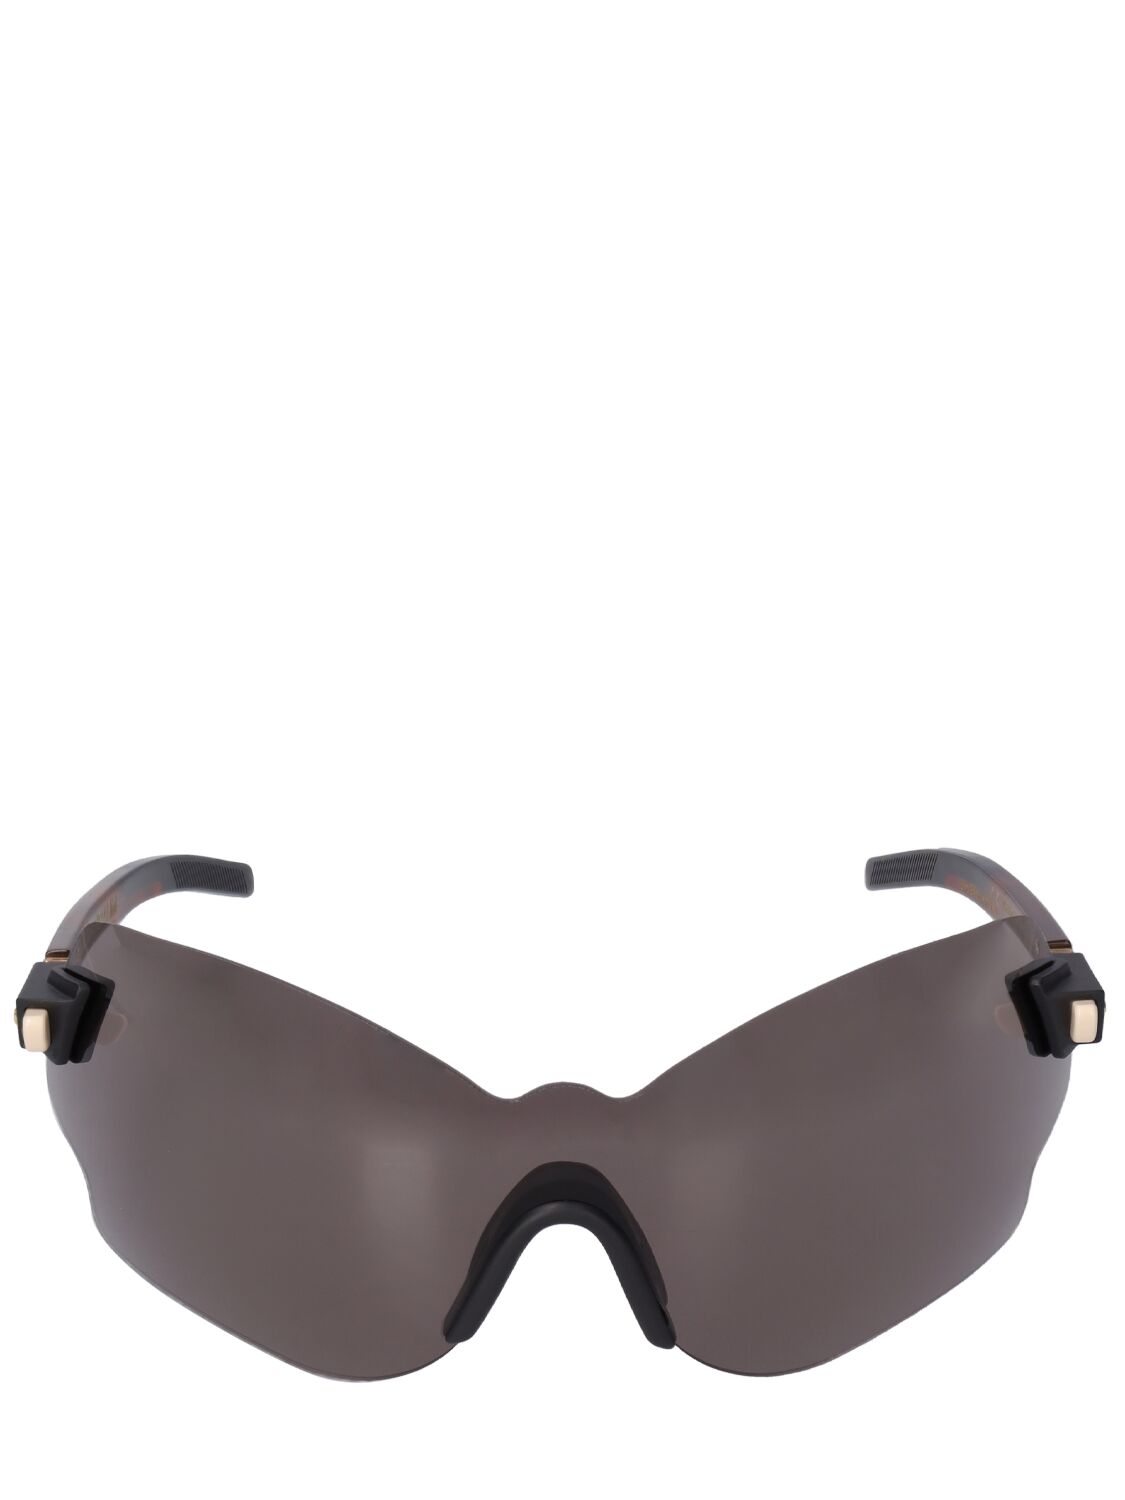 E51 Mask Acetate Sunglasses